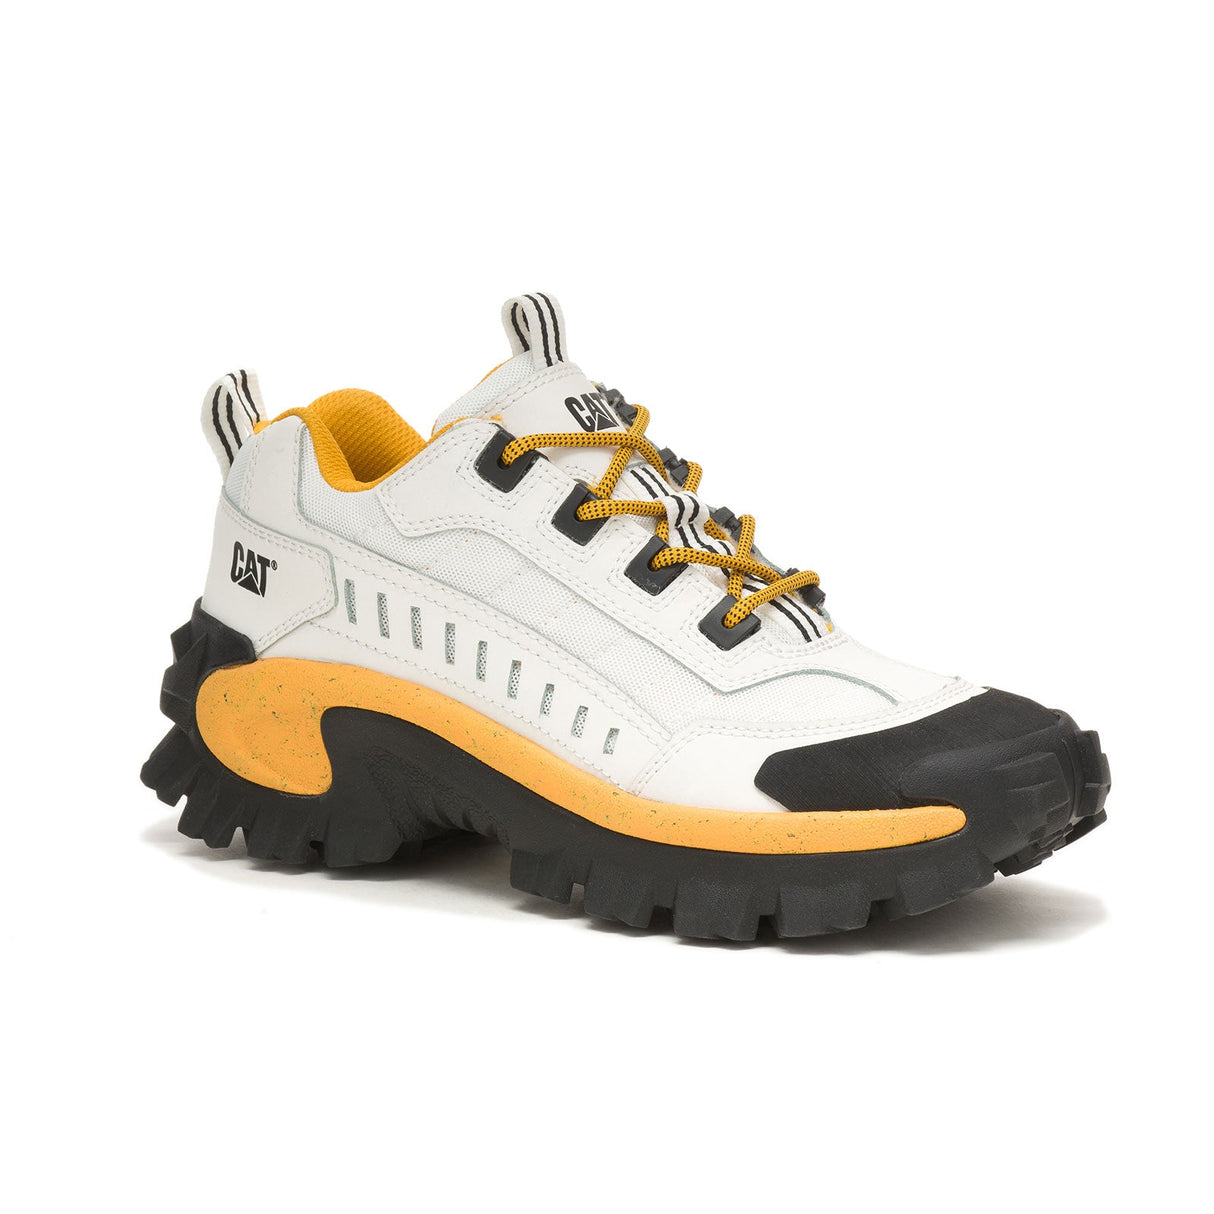 Caterpillar Intruder Men's Work Shoes P723902-2